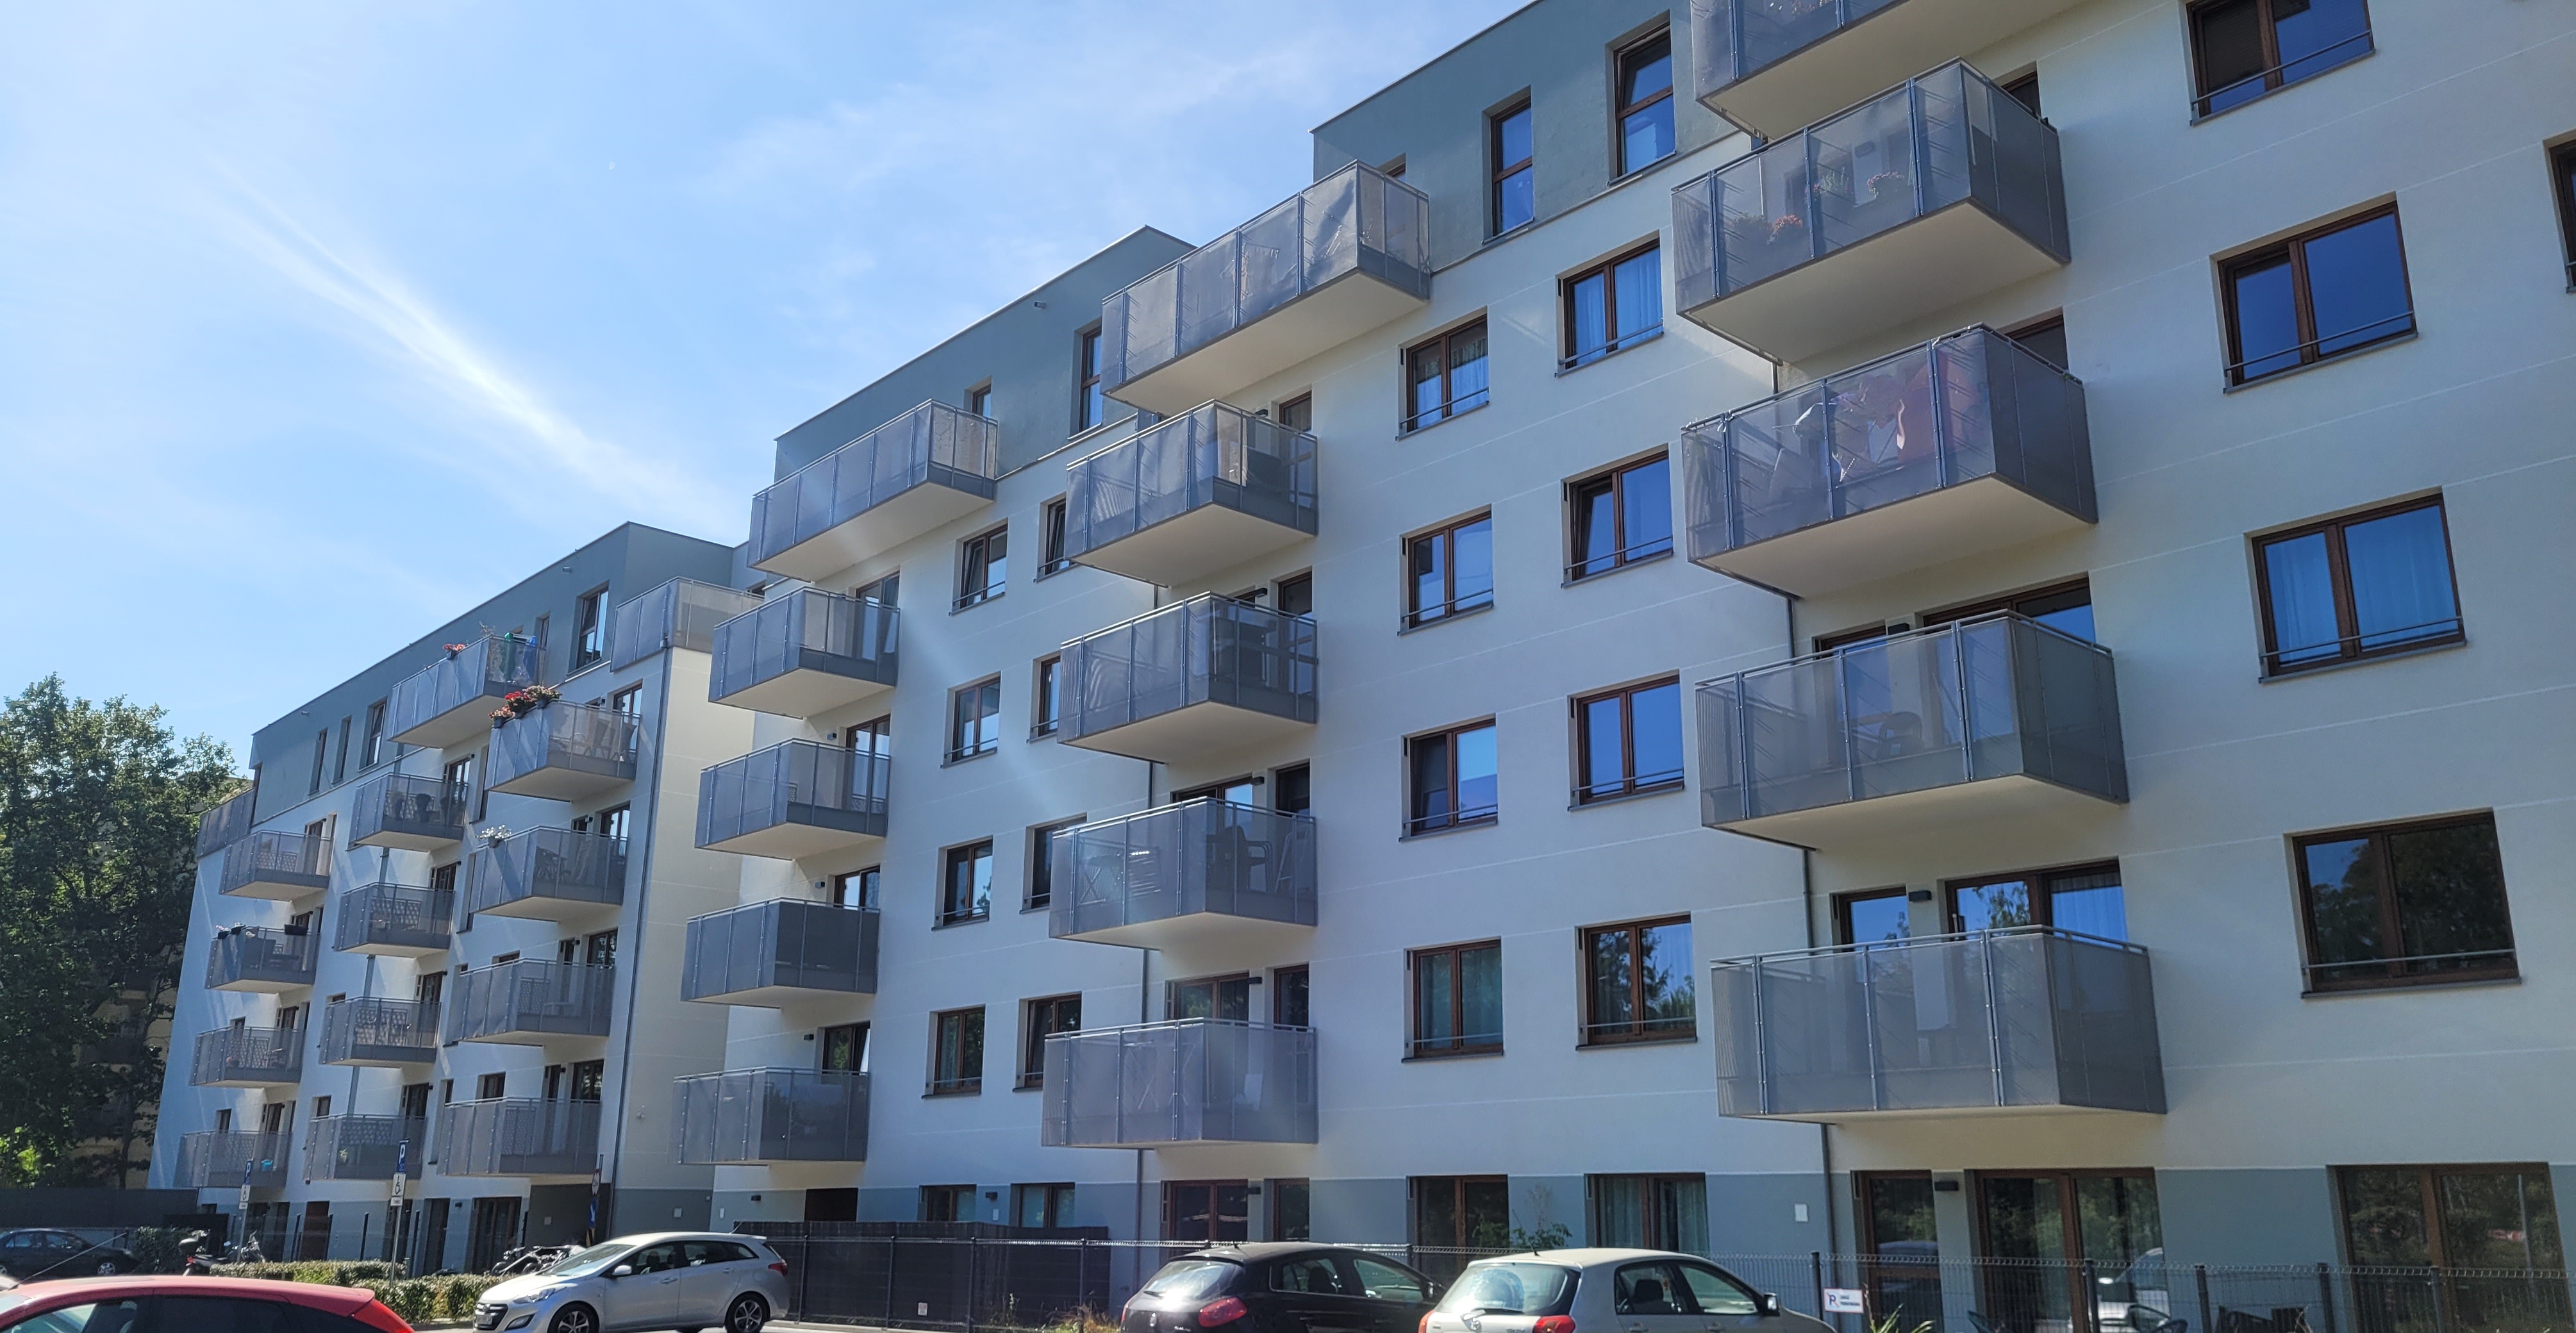 Osiedle mieszkaniowe "FORET" w Warszawie - Bygningskonstruksjon